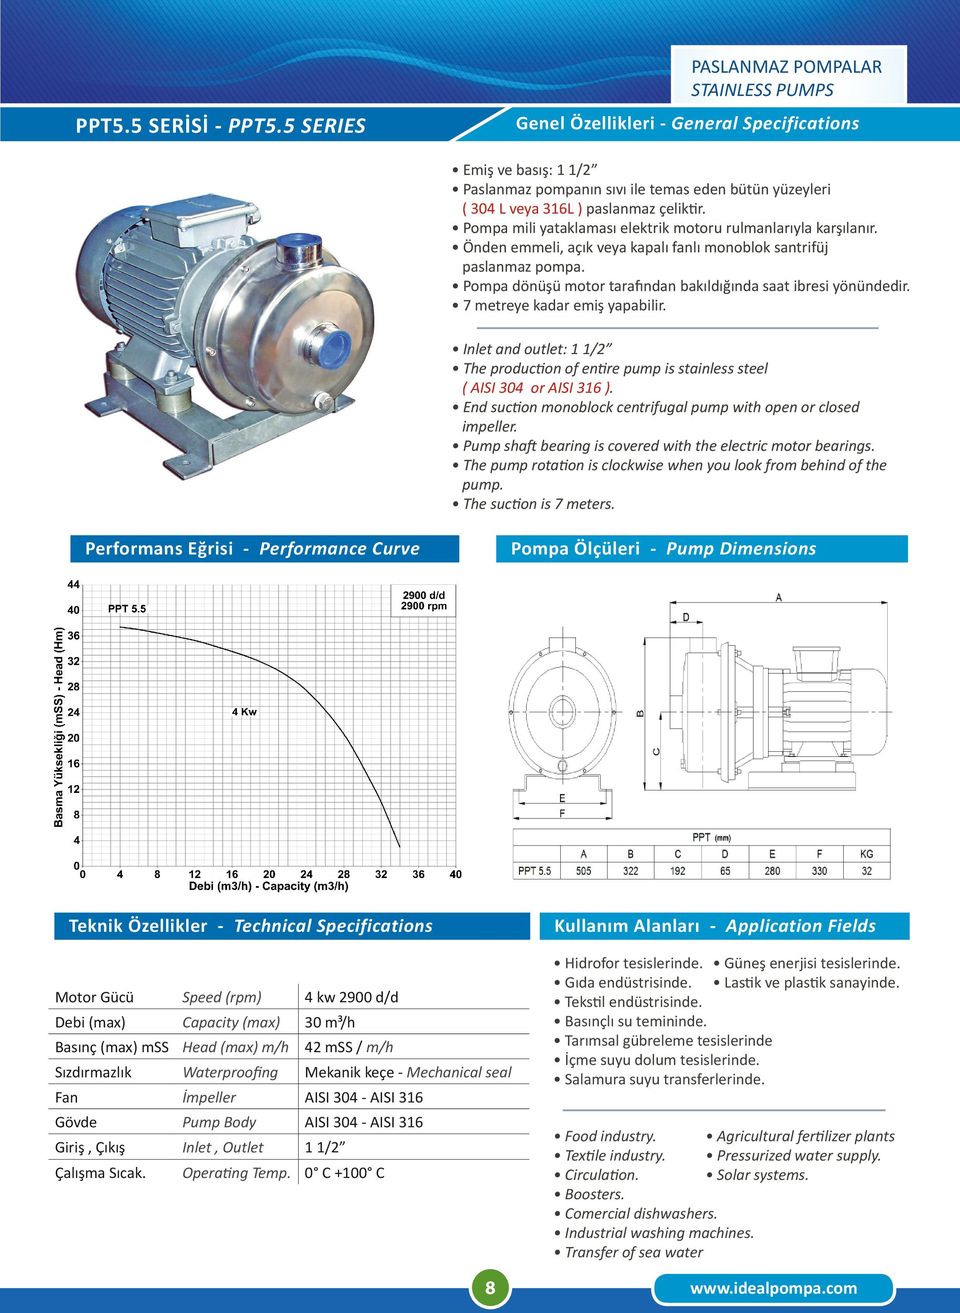 Gücü Speed (rpm) 4 kw 2900 d/d Debi (max) Capacity (max) 30